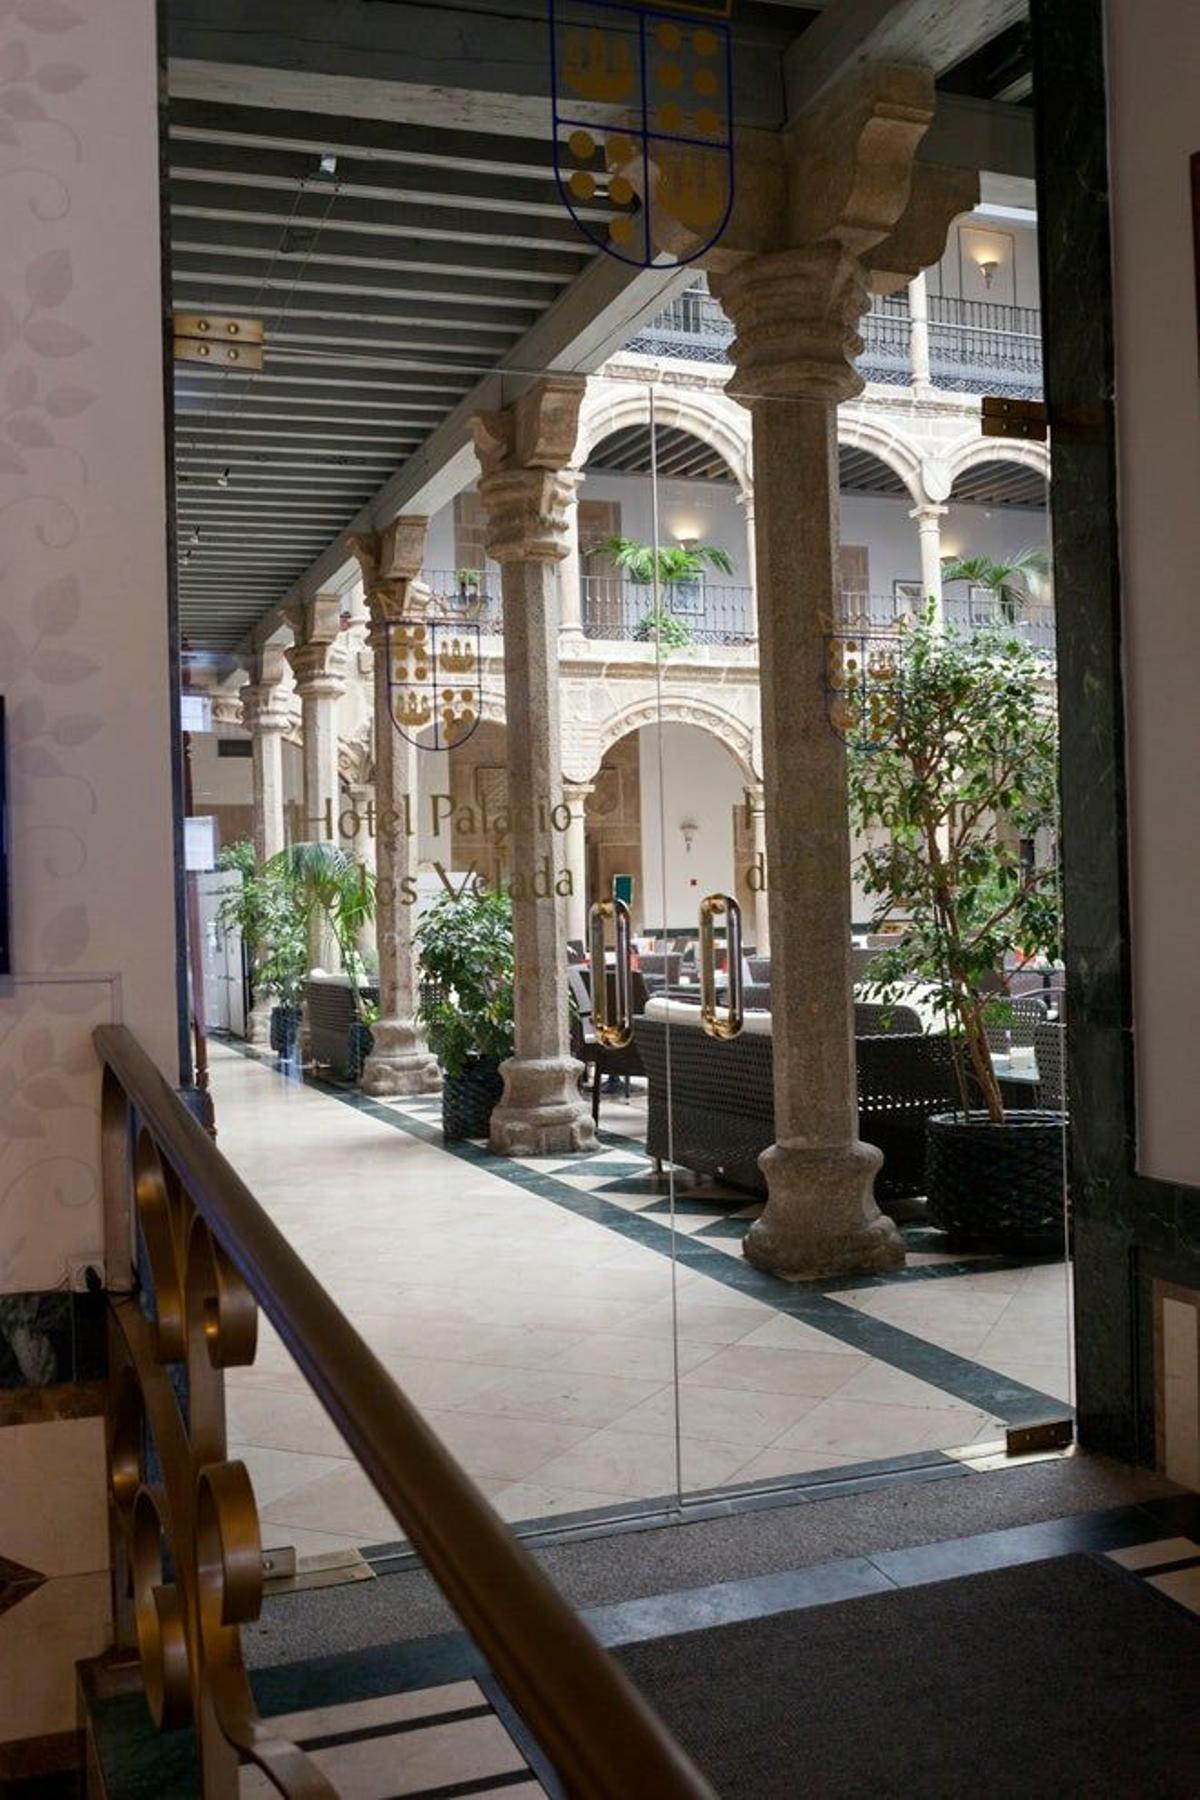 Entrada del Hotel Palacio de Los Velada